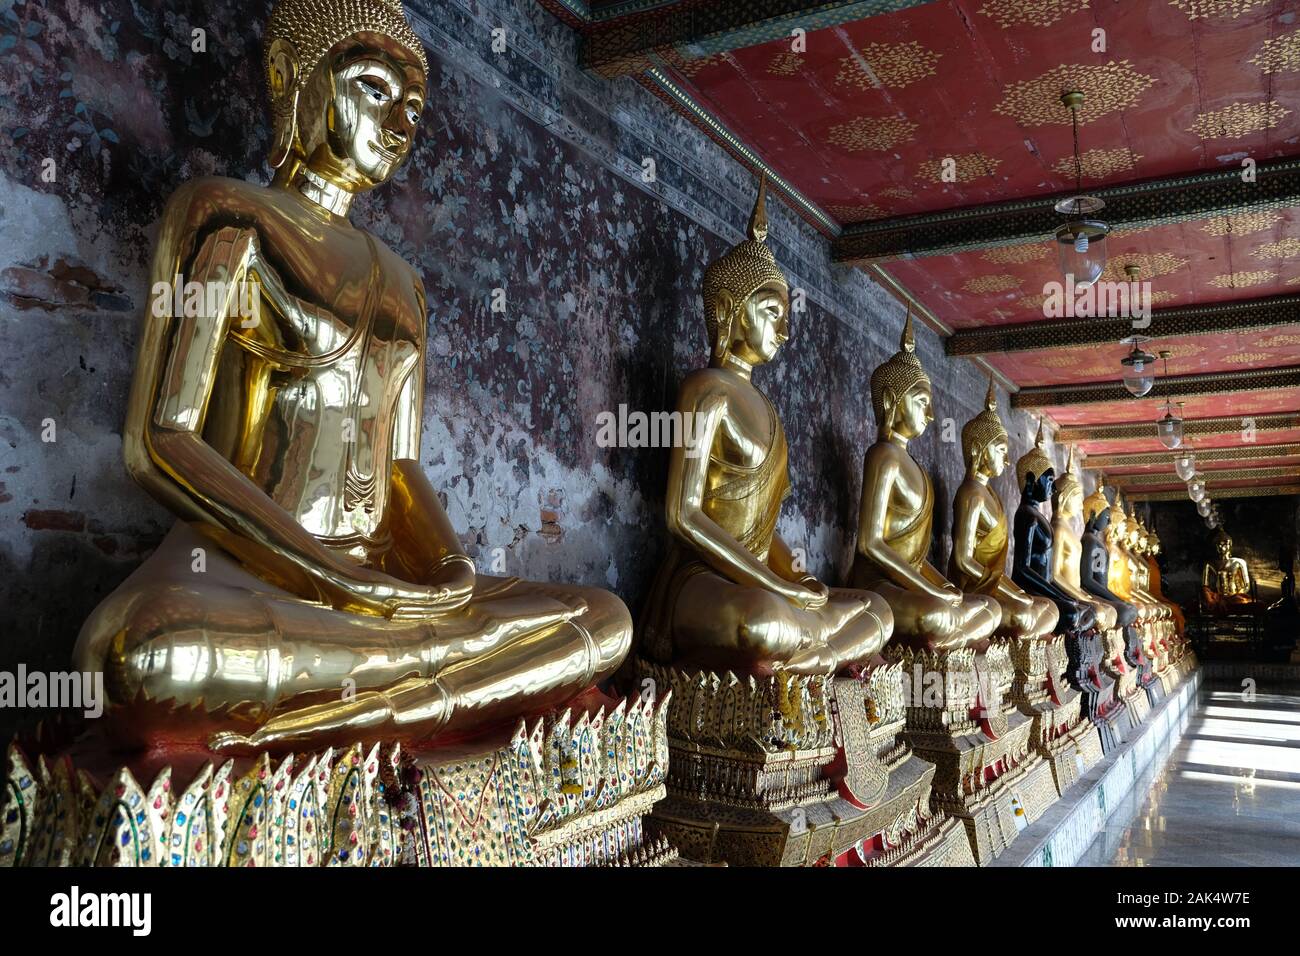 Bangkok Thailandia Wat Suthat Thepwararam tempio - meditando Golden Statue di Buddha seduto in una fila in un corridoio Foto Stock